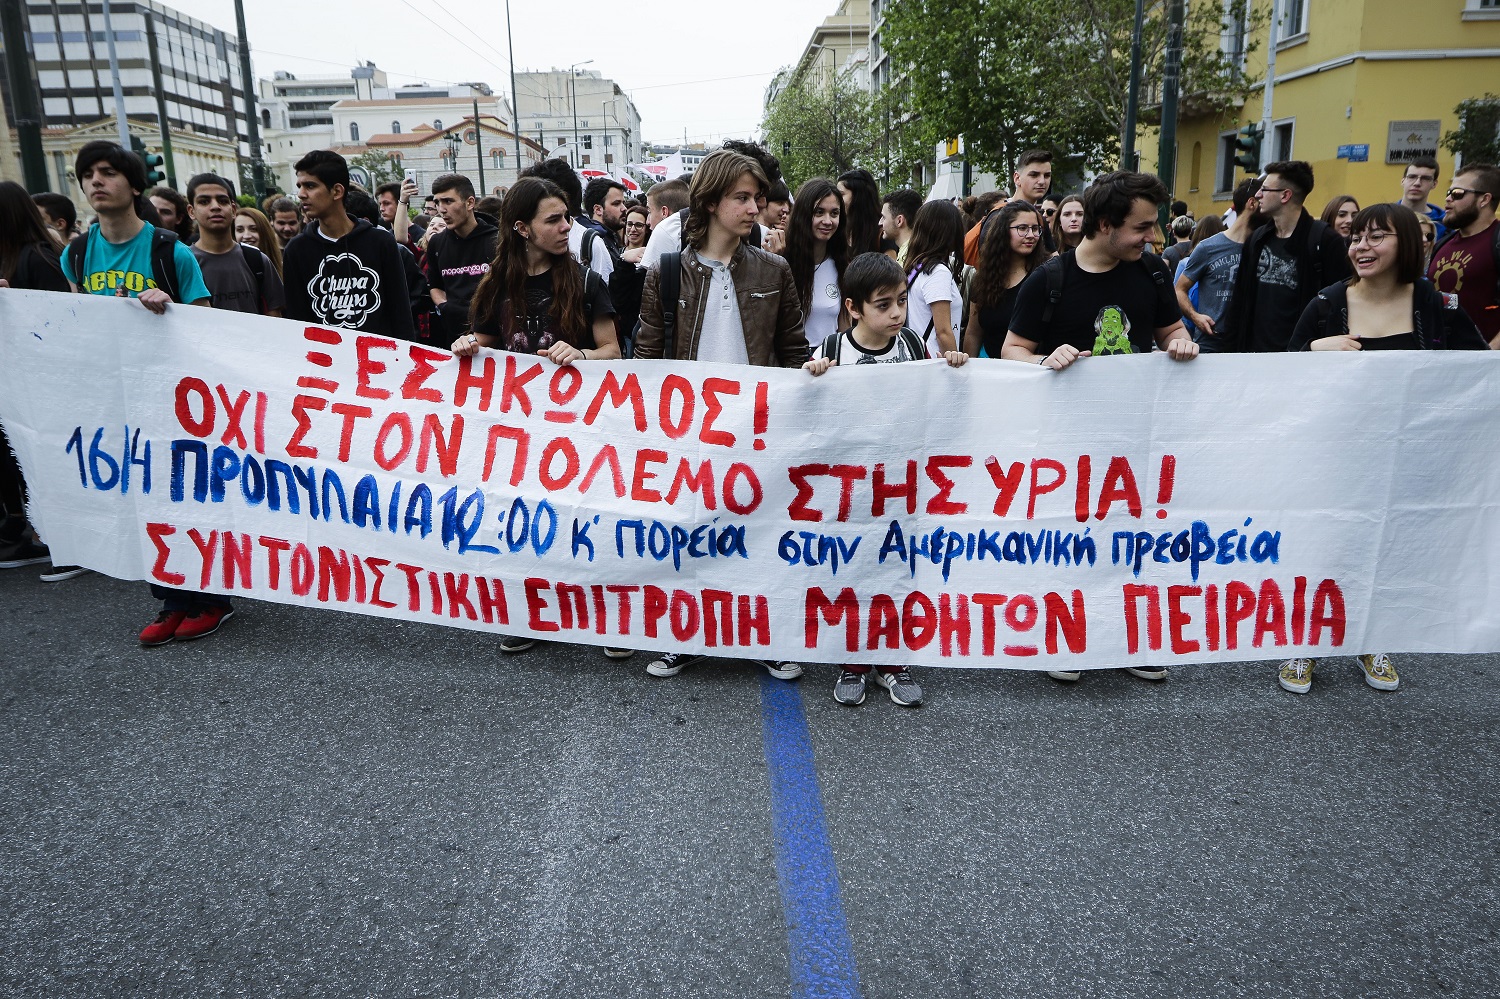 Αντιπολεμικό συλλαλητήριο από μαθητές και φοιτητές στην Αθήνα